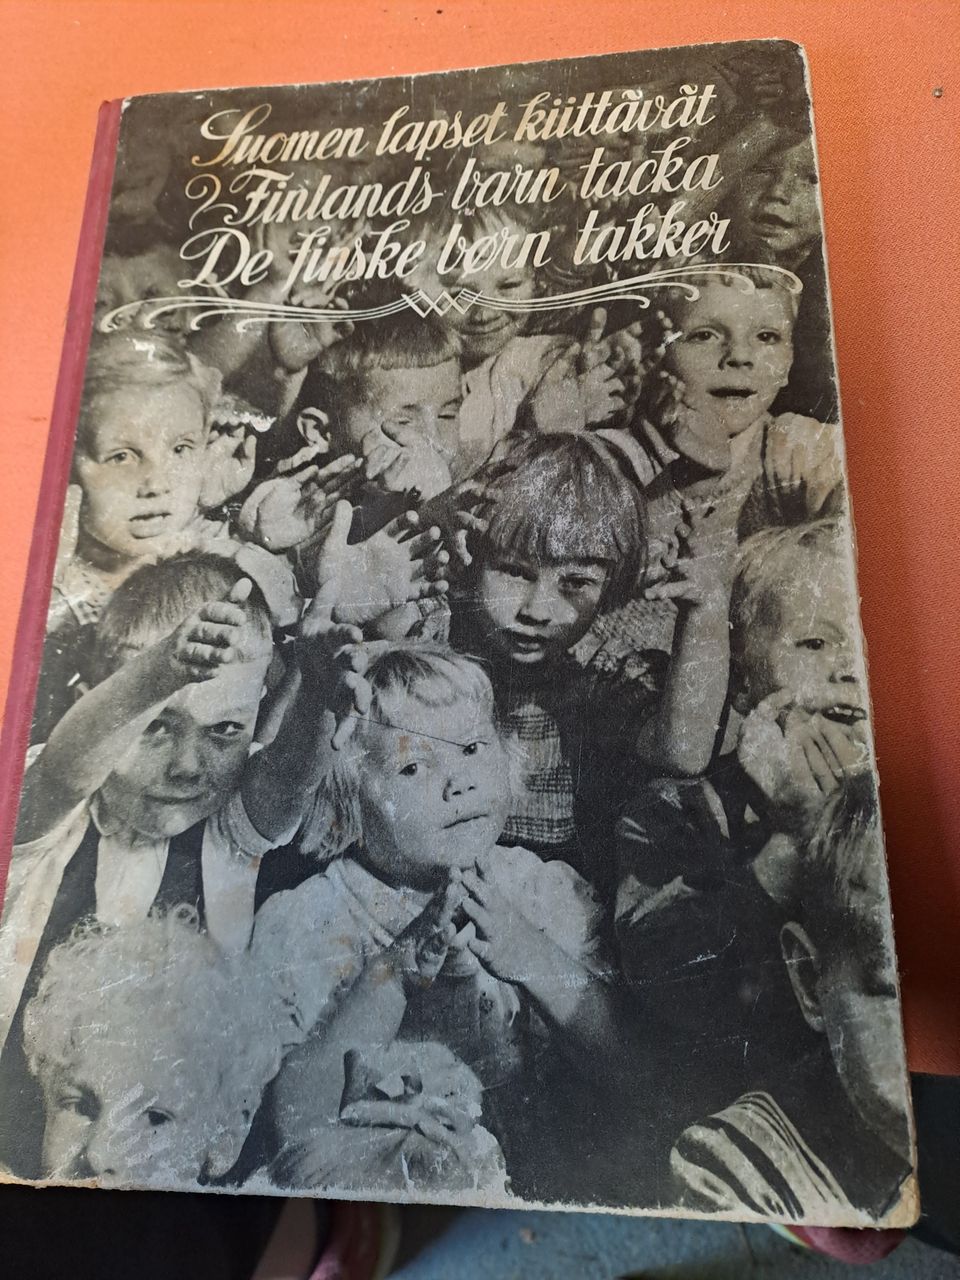 Suomen Lapset Kiittää kirja v.1949